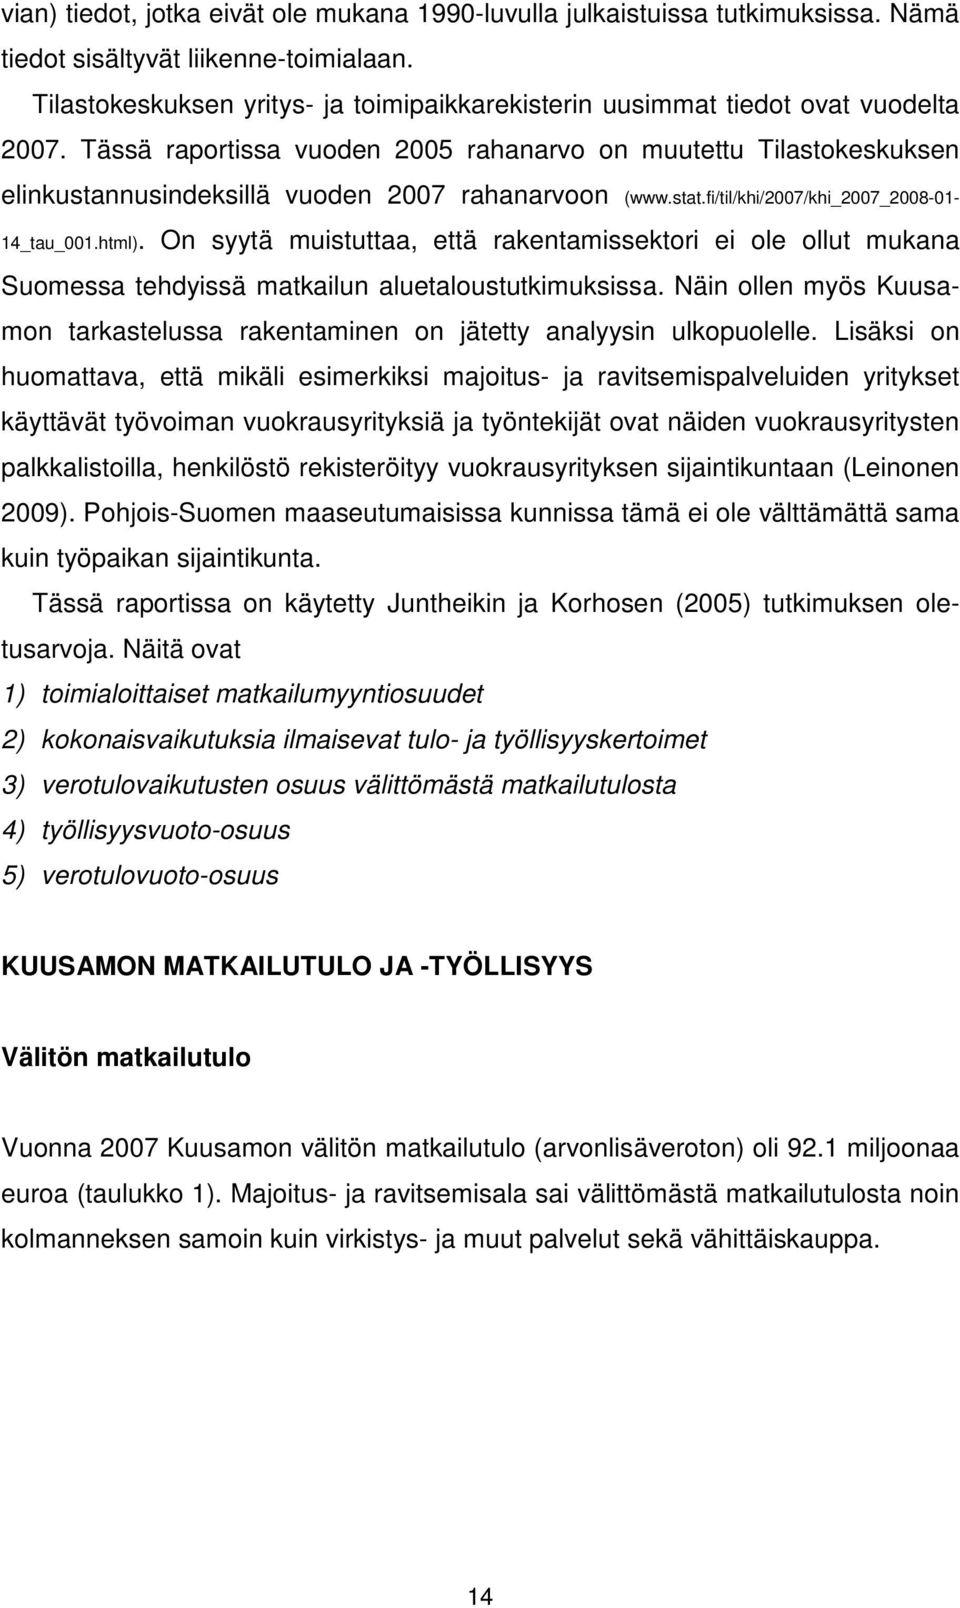 Tässä raportissa vuoden 2005 rahanarvo on muutettu Tilastokeskuksen elinkustannusindeksillä vuoden 2007 rahanarvoon (www.stat.fi/til/khi/2007/khi_2007_2008-01- 14_tau_001.html).